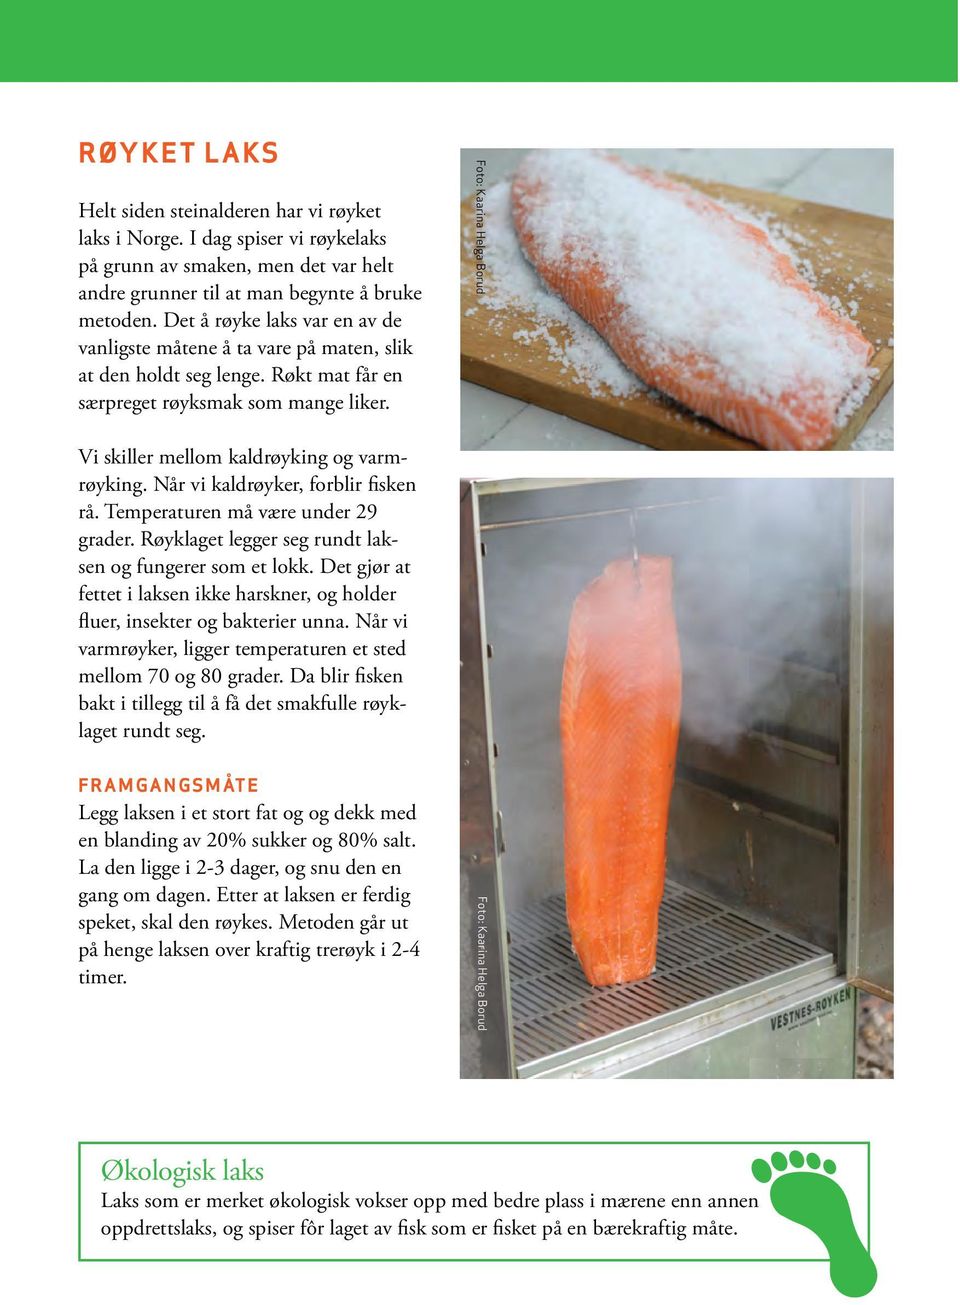 Når vi kaldrøyker, forblir fisken rå. Temperaturen må være under 29 grader. Røyklaget legger seg rundt laksen og fungerer som et lokk.